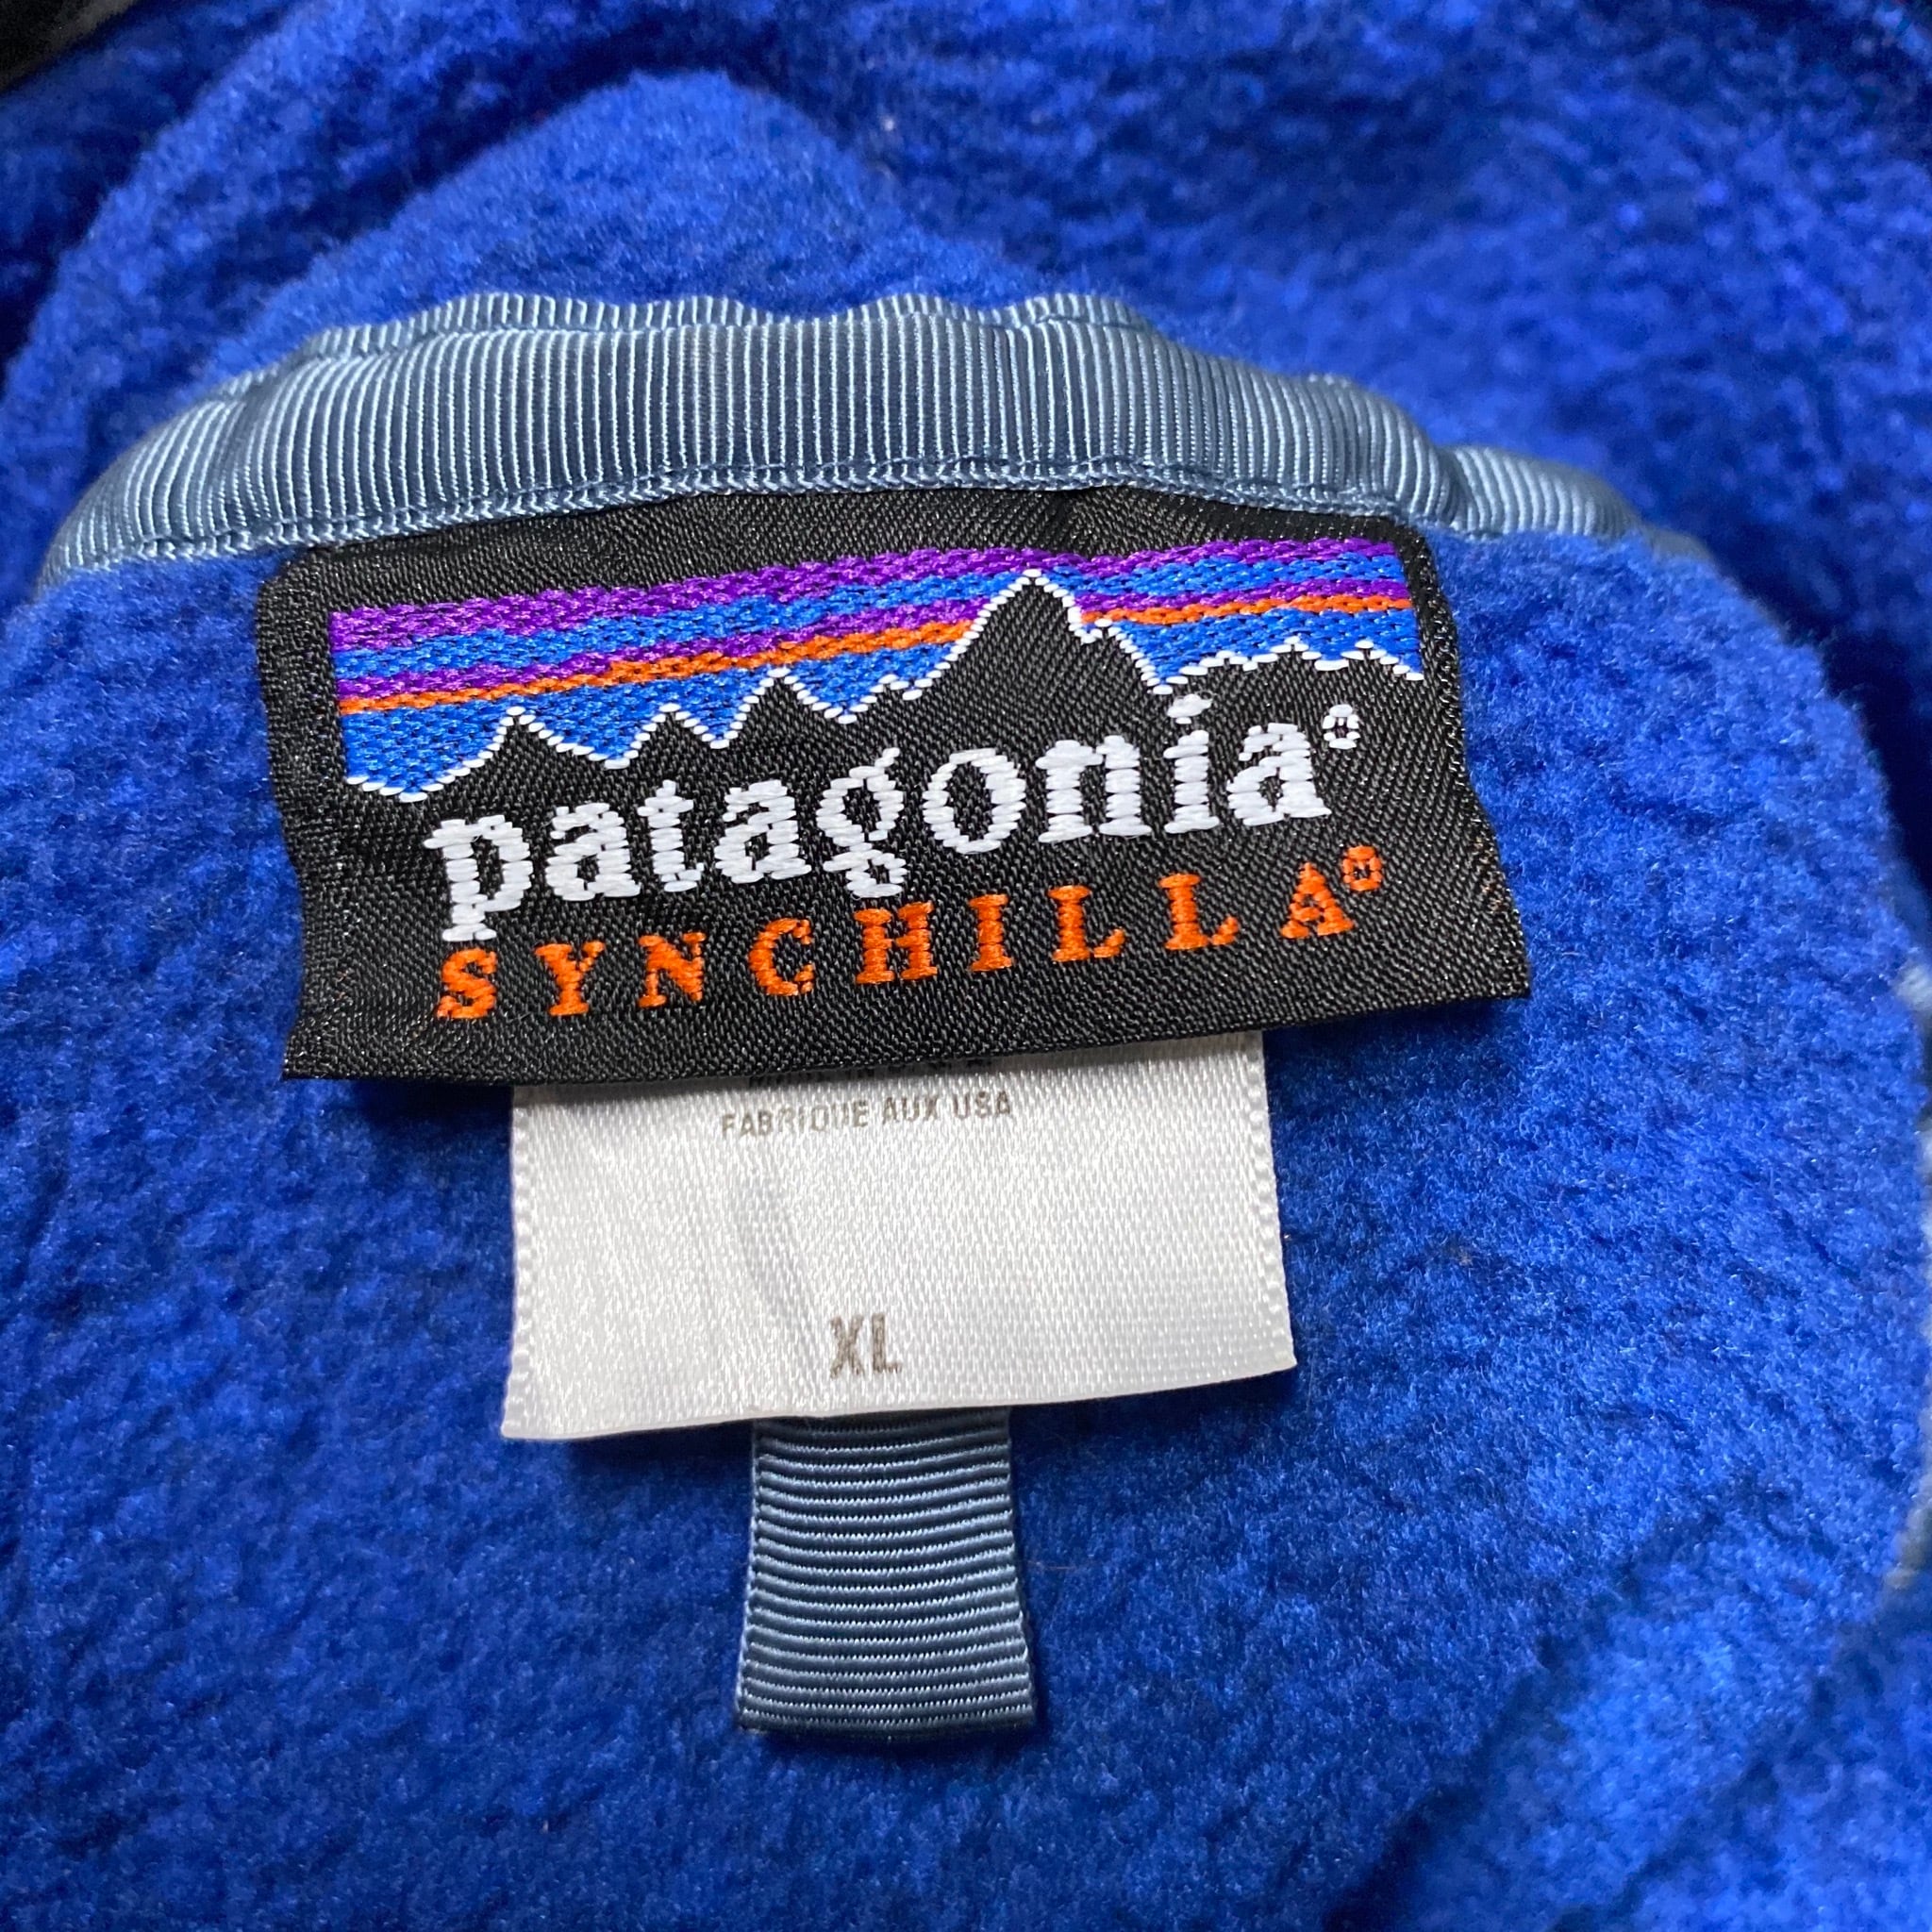 USA製 Patagonia パタゴニア SYNCHILLA シンチラ スナップT フリースプルオーバー ブルー 青色 メンズXL 古着  【アウトドアジャケット】 cave 古着屋【公式】古着通販サイト